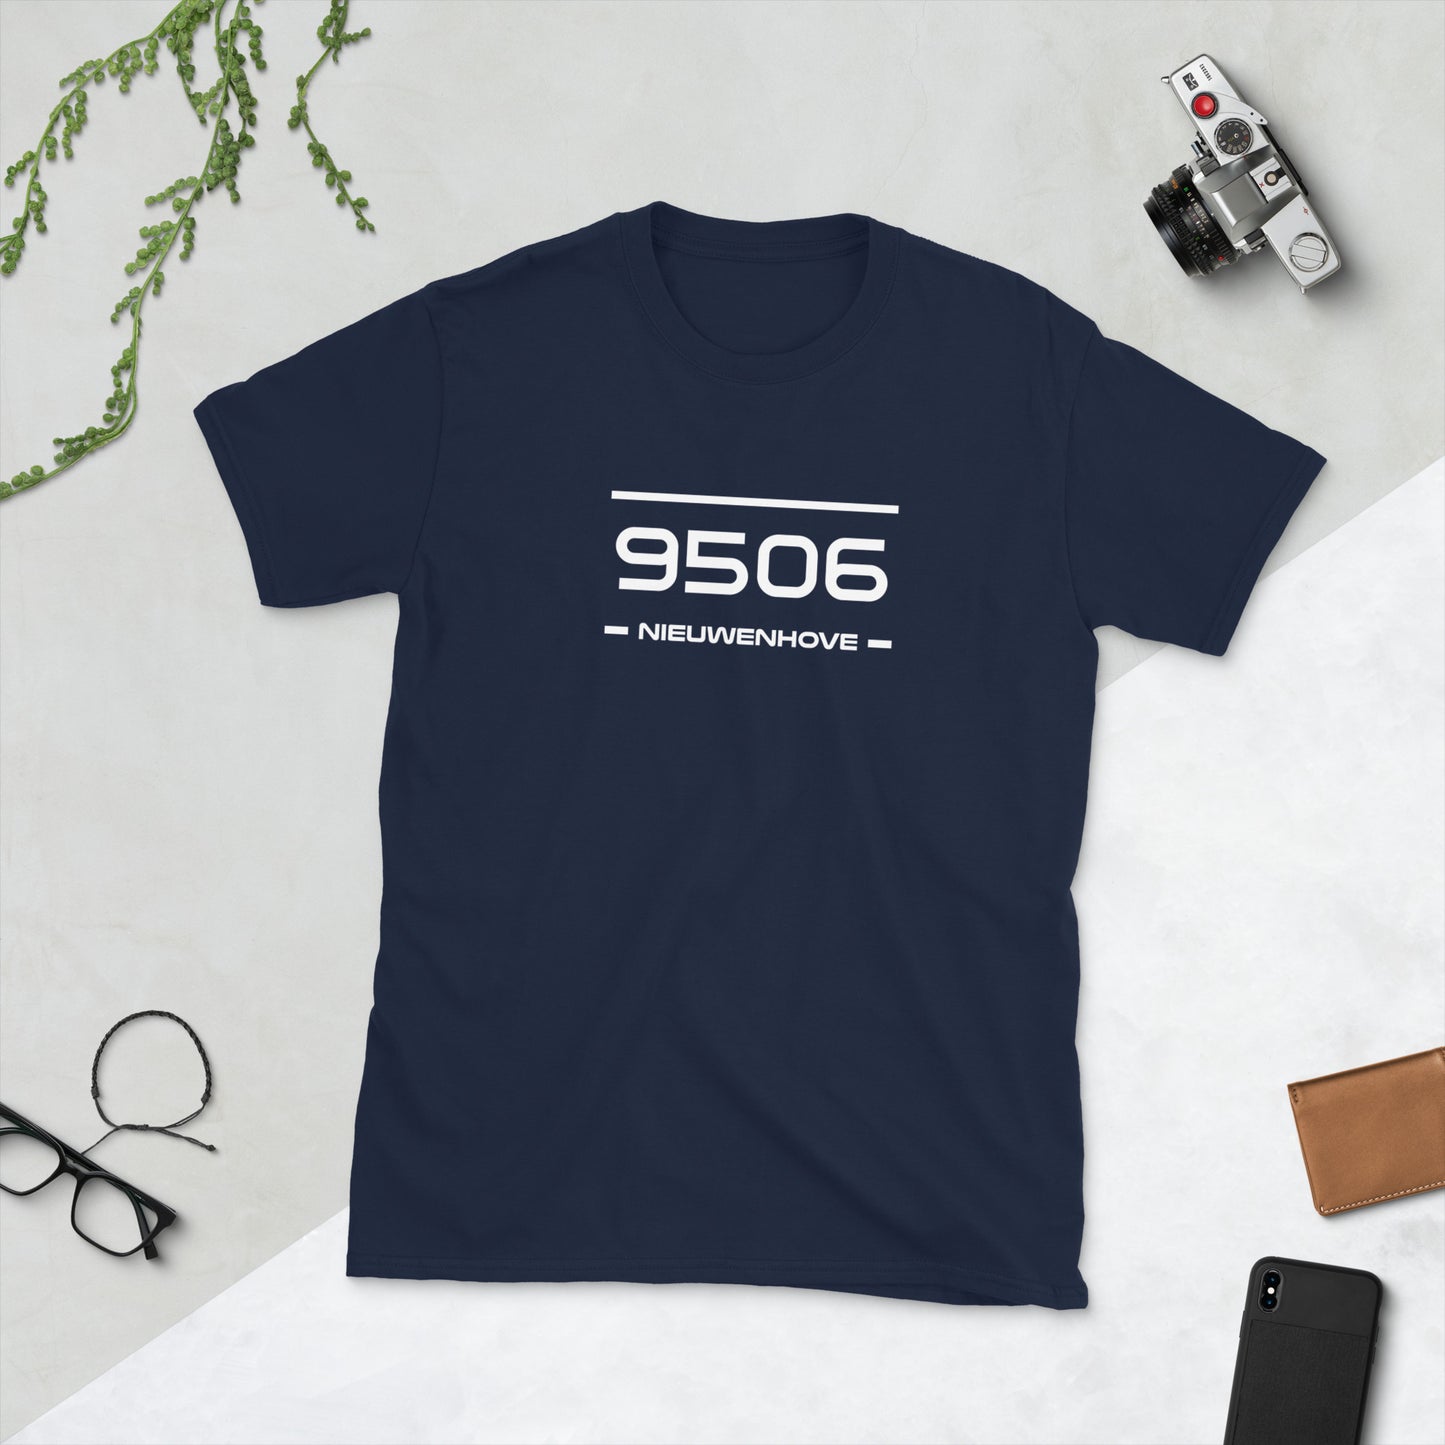 T-Shirt - 9506 - Nieuwenhove